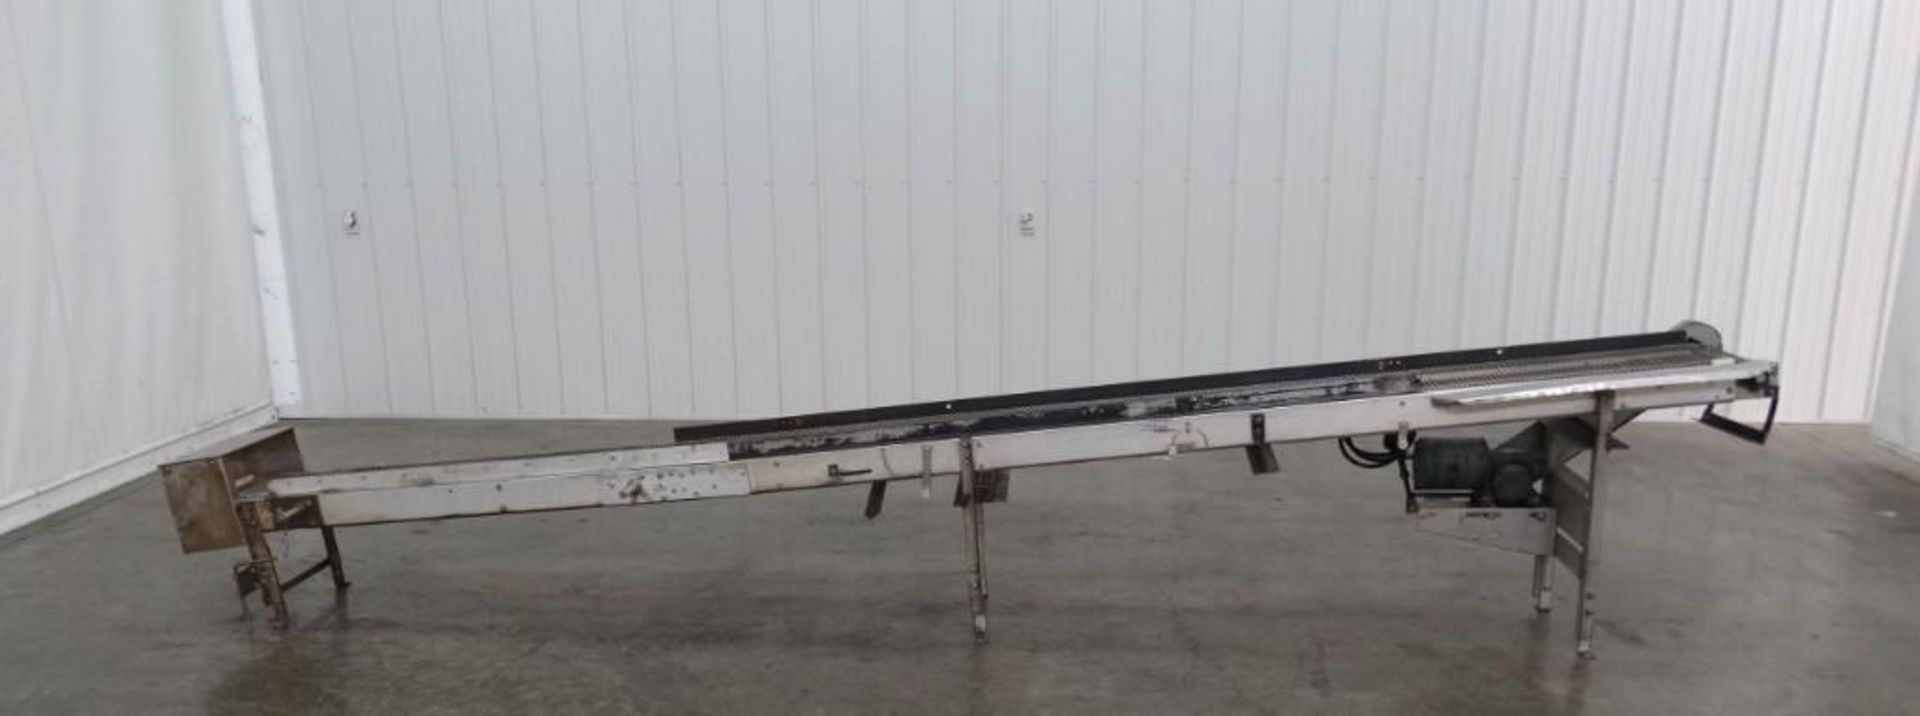 Steel Conveyor 12 Inch Wide x 15 Foot Long